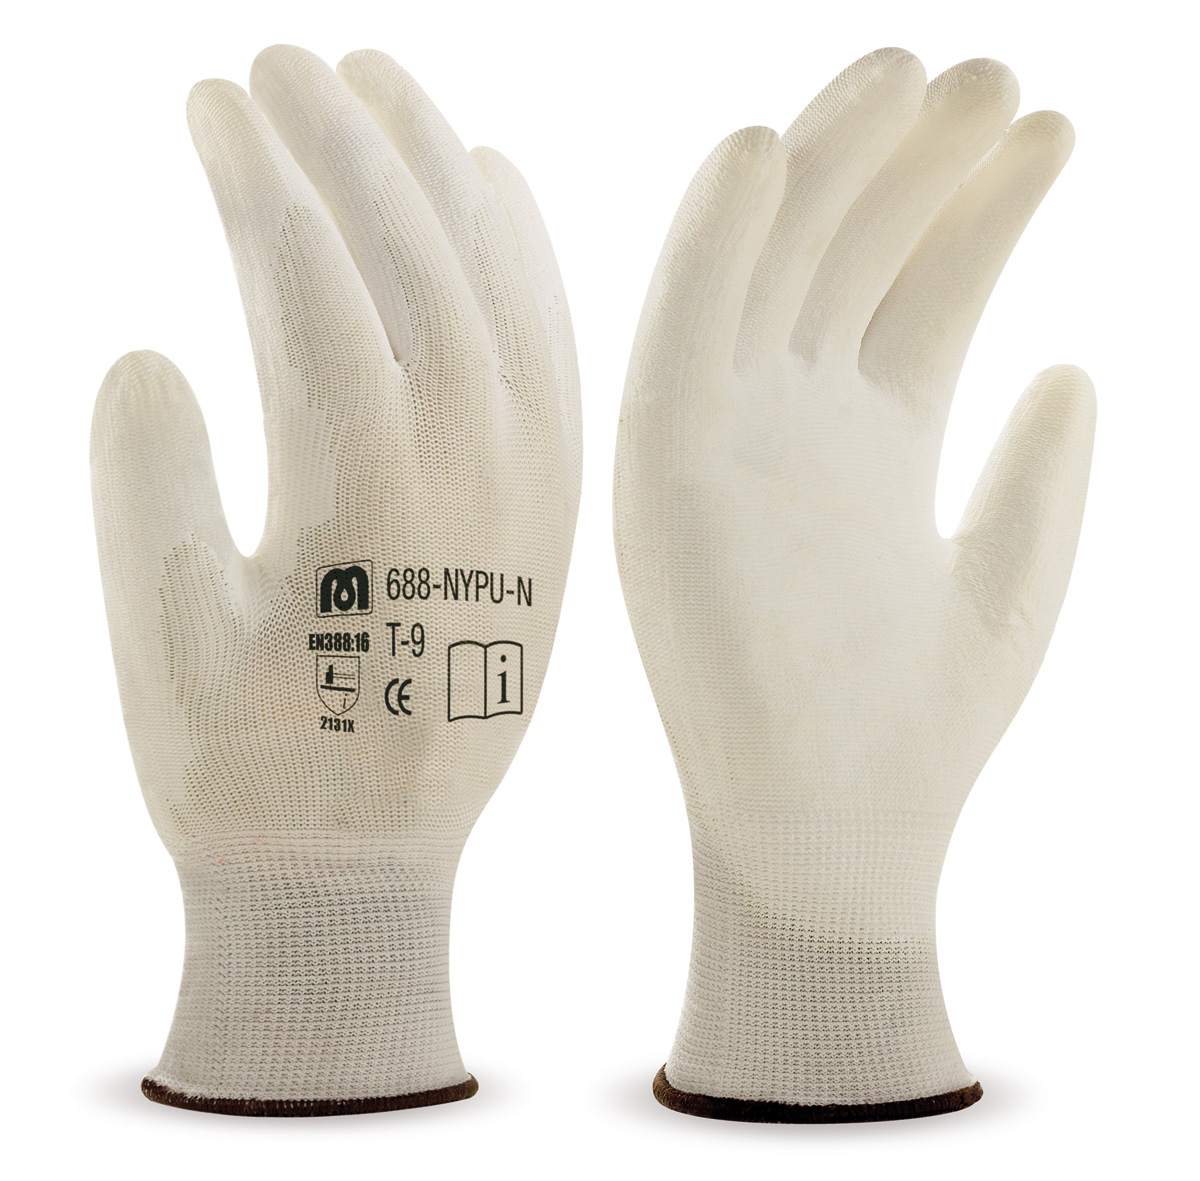 688-NYPU/N Gants de Travail Nylon Gant polyester sans coutures. Revêtement polyurethane sur la paume et les doigts